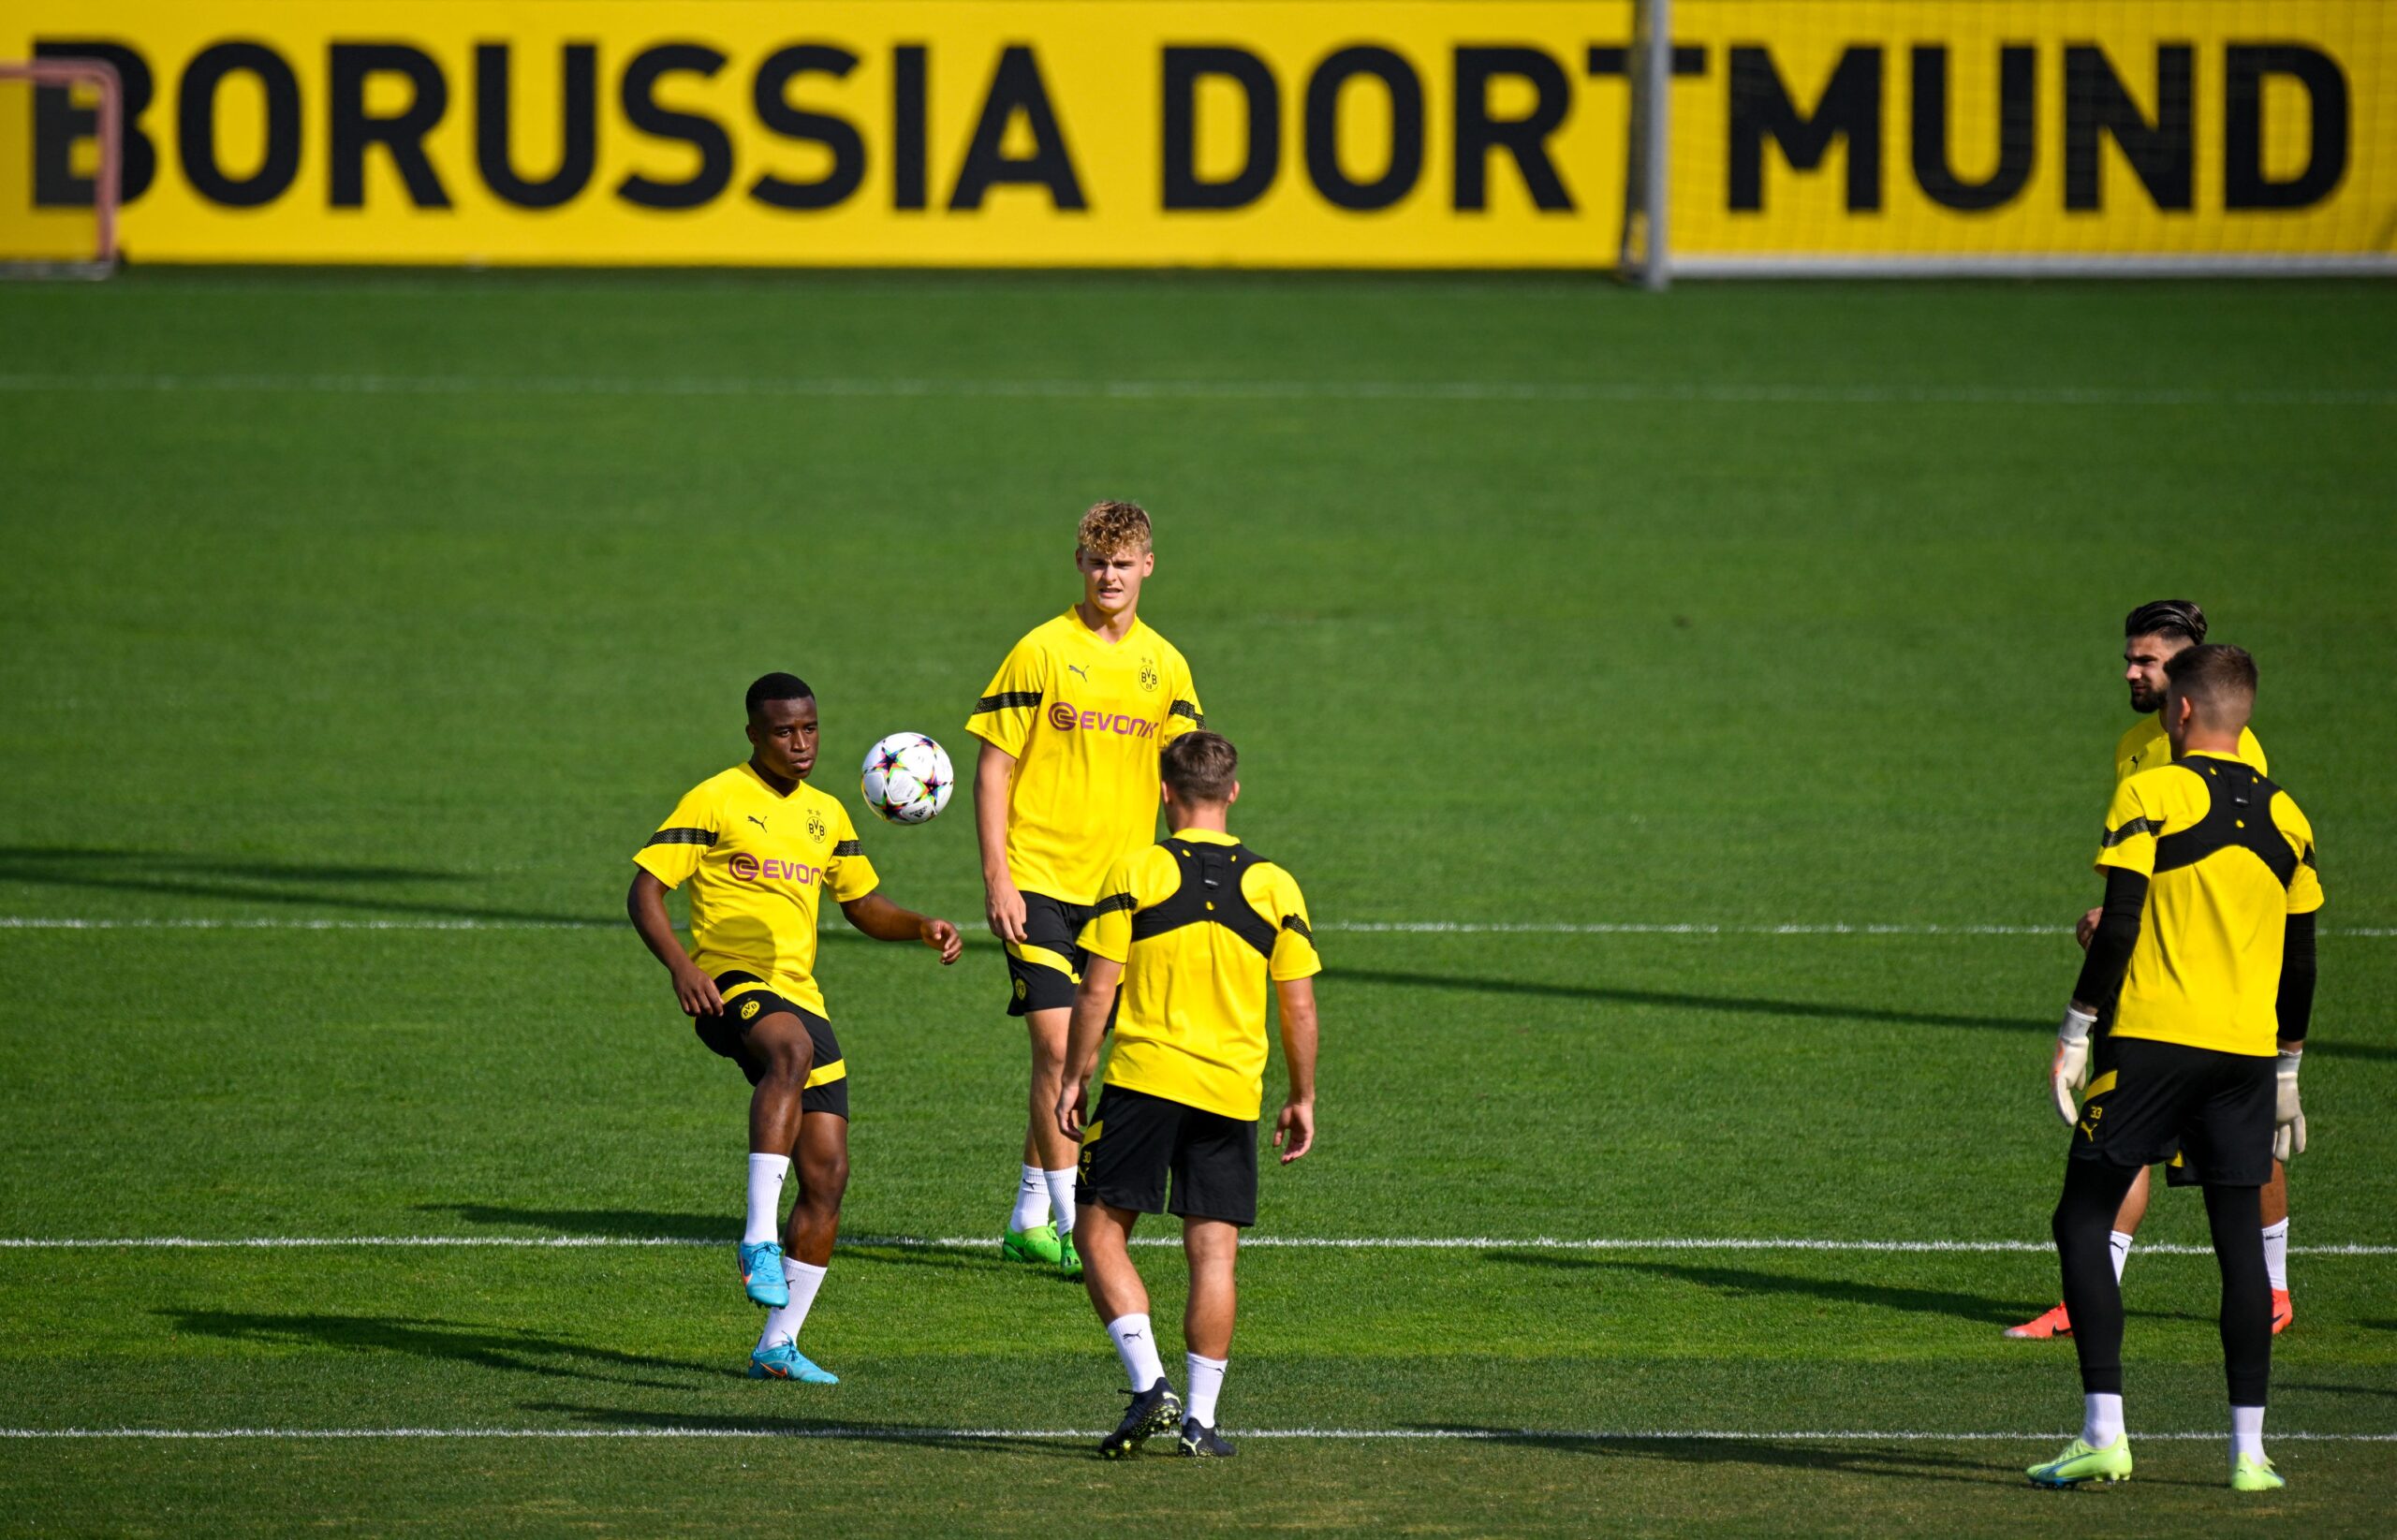 Borussia Dortmund recuperará tres jugadores claves cuando retorne el fútbol de clubes. Foto: Getty Images.